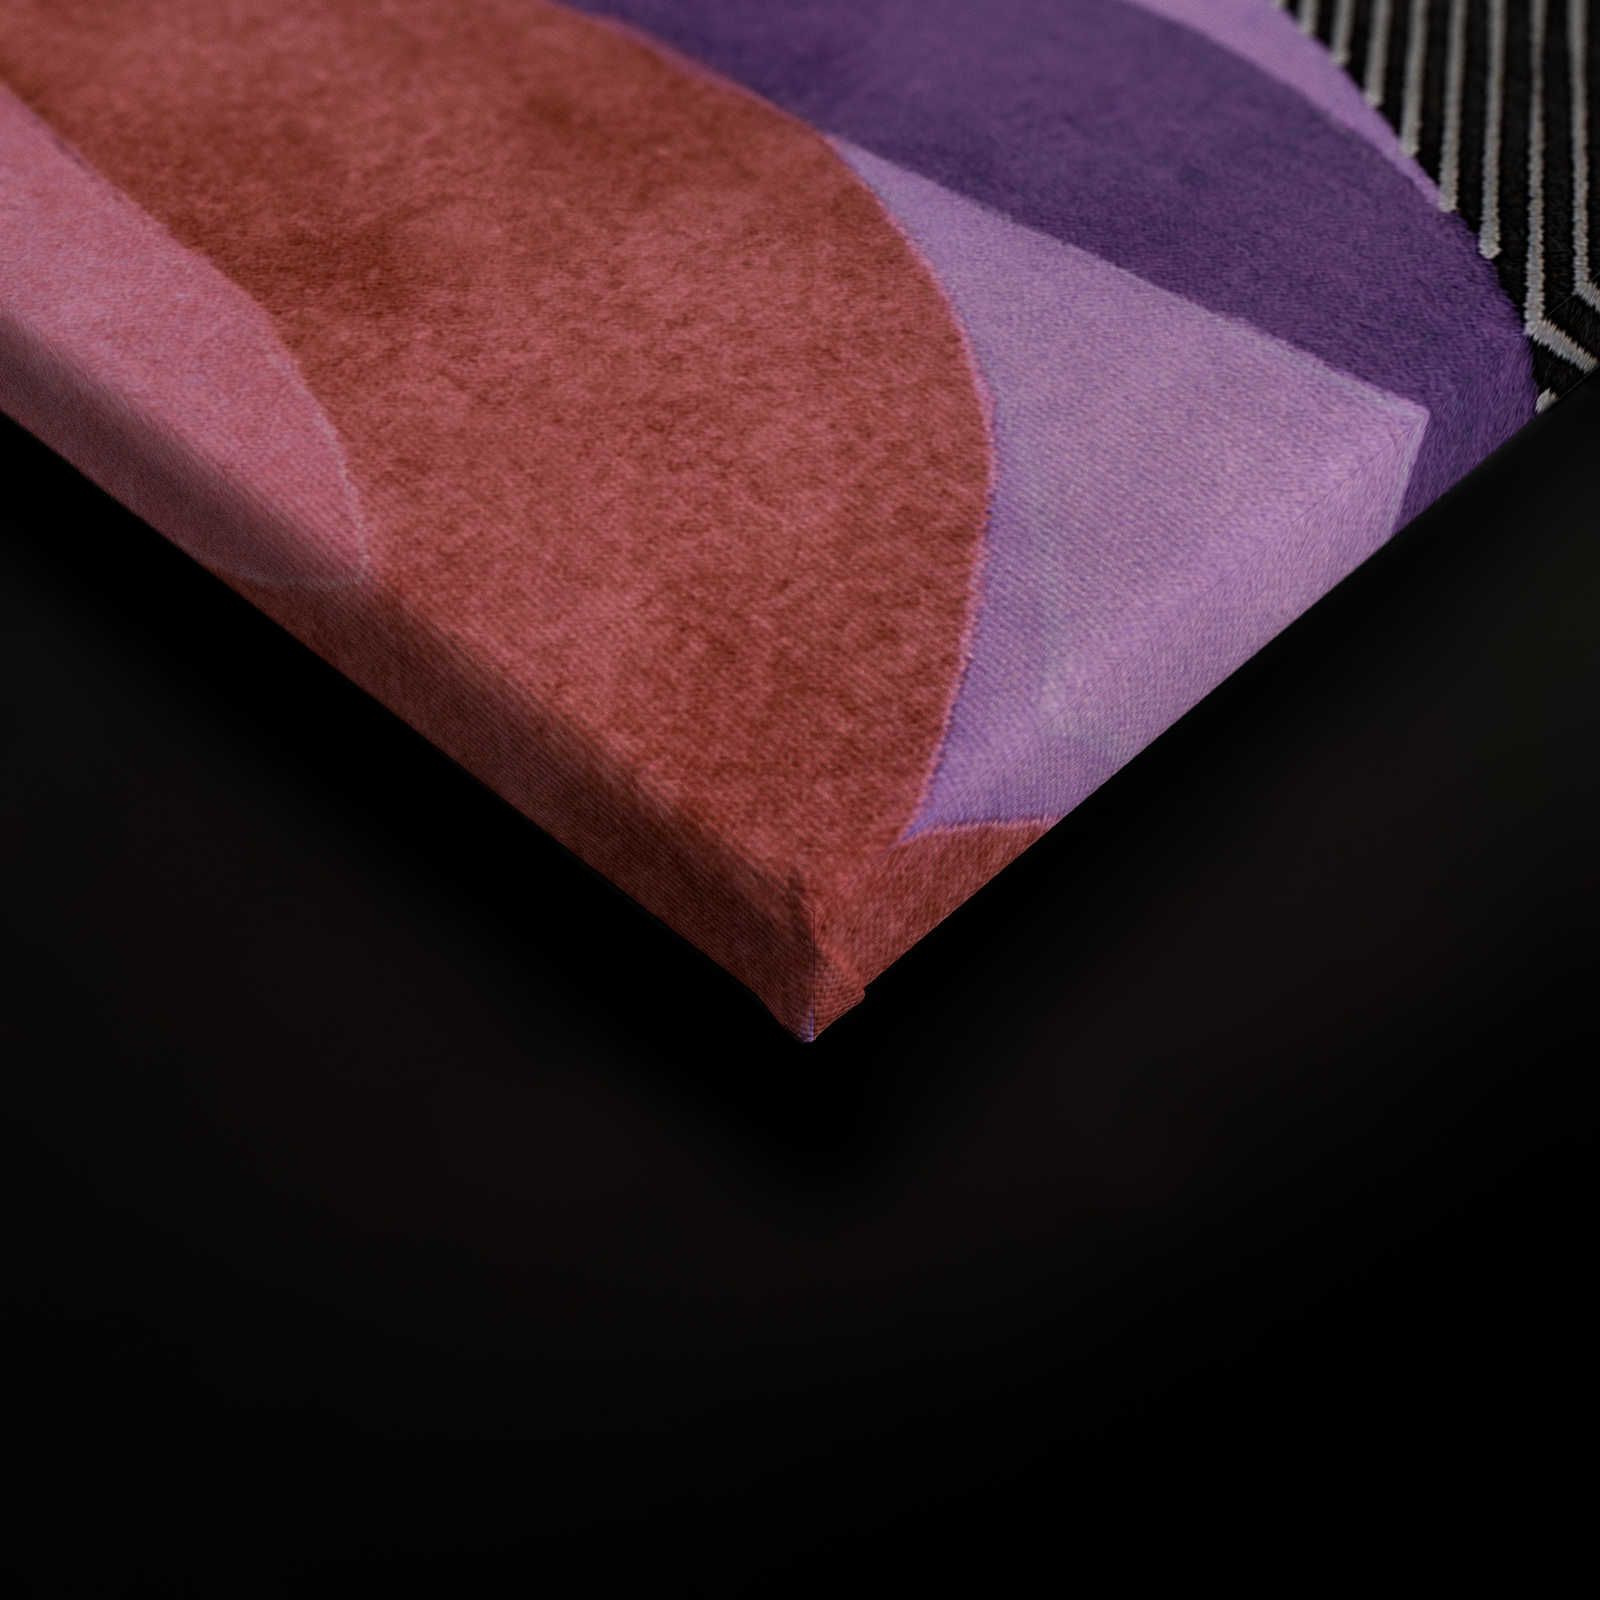             Lugar de encuentro 2 - Cuadro en lienzo diseño etno abstracto en negro y rosa - 0,90 m x 0,60 m
        